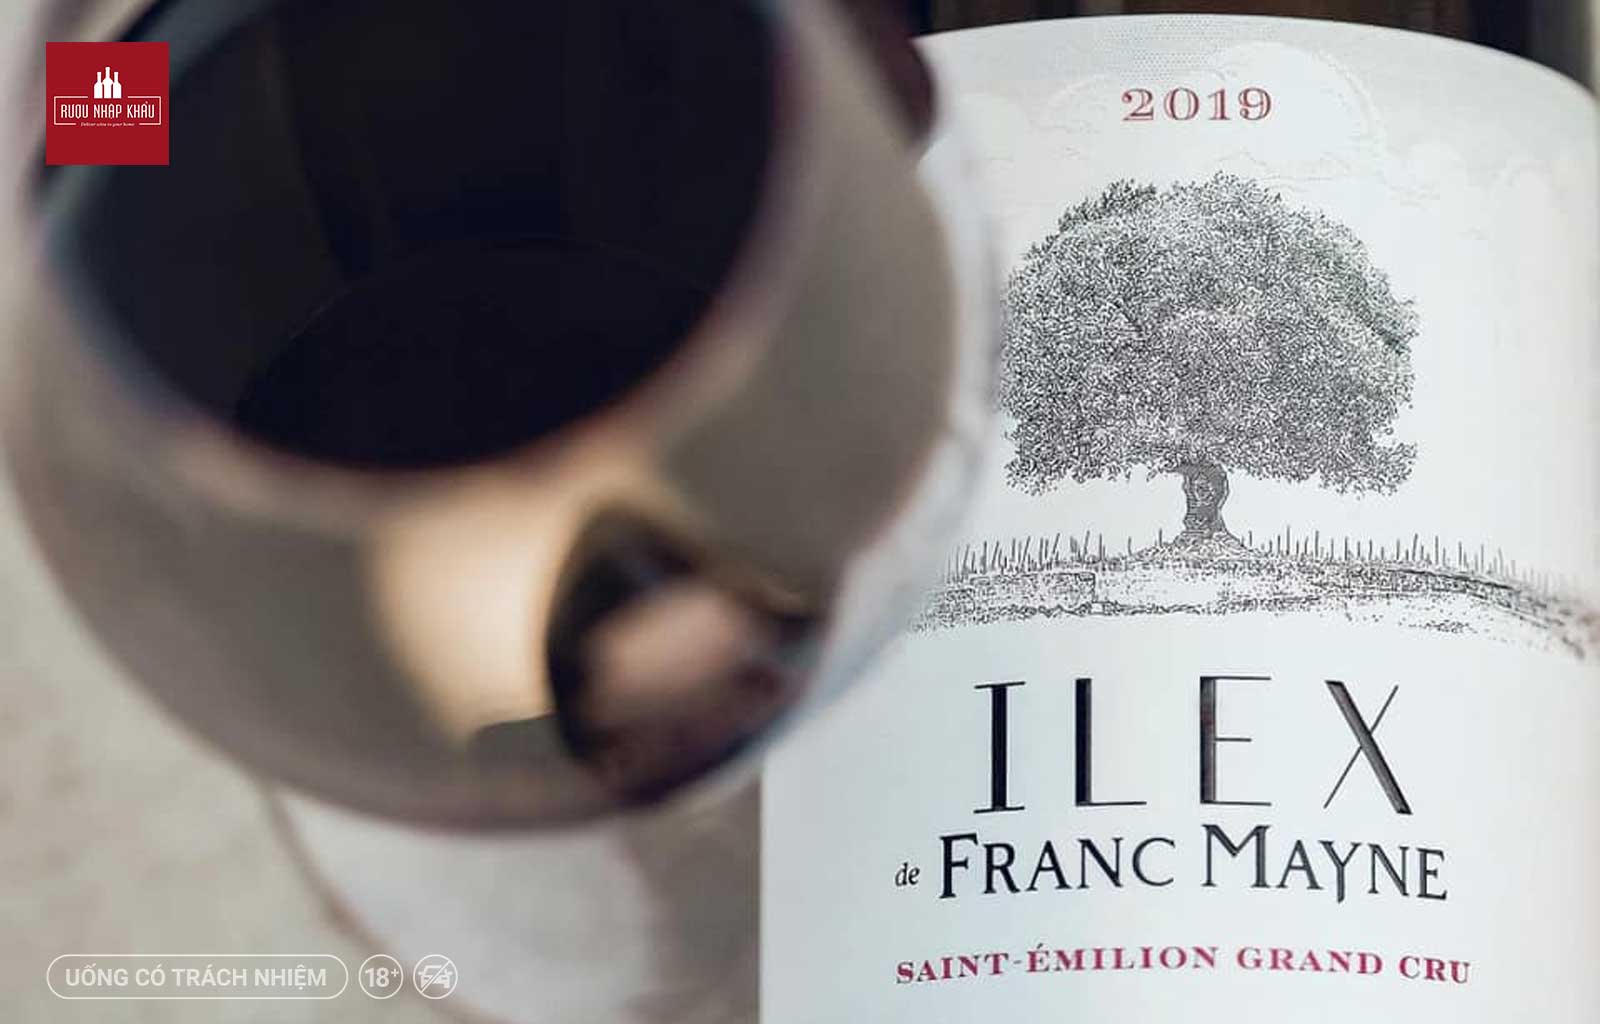 Khám phá mới vang Bordeaux với combo ưu đãi đặc biệt - Ilex de Franc-Mayne